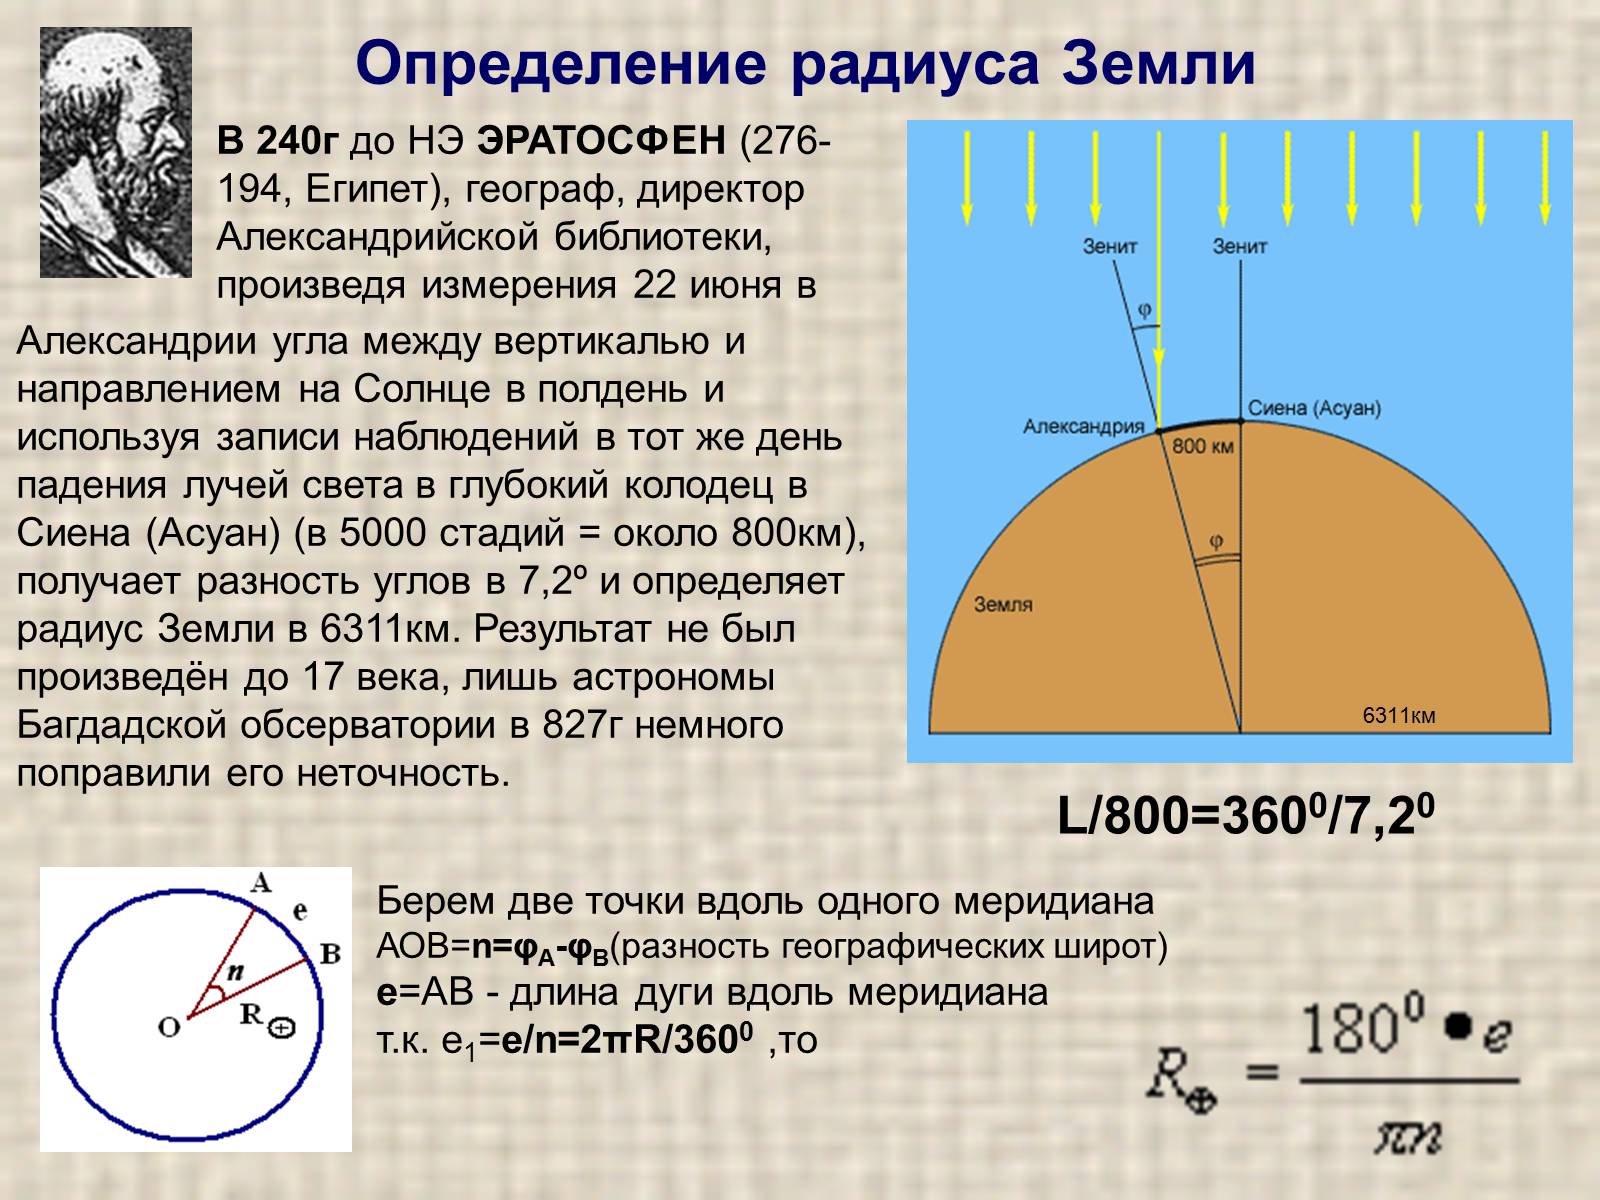 Радиус земного шара равна. Как измерили радиус земли. Определение радиуса земли. Измерение радиуса земли Эратосфеном. Как вычислили радиус земли.